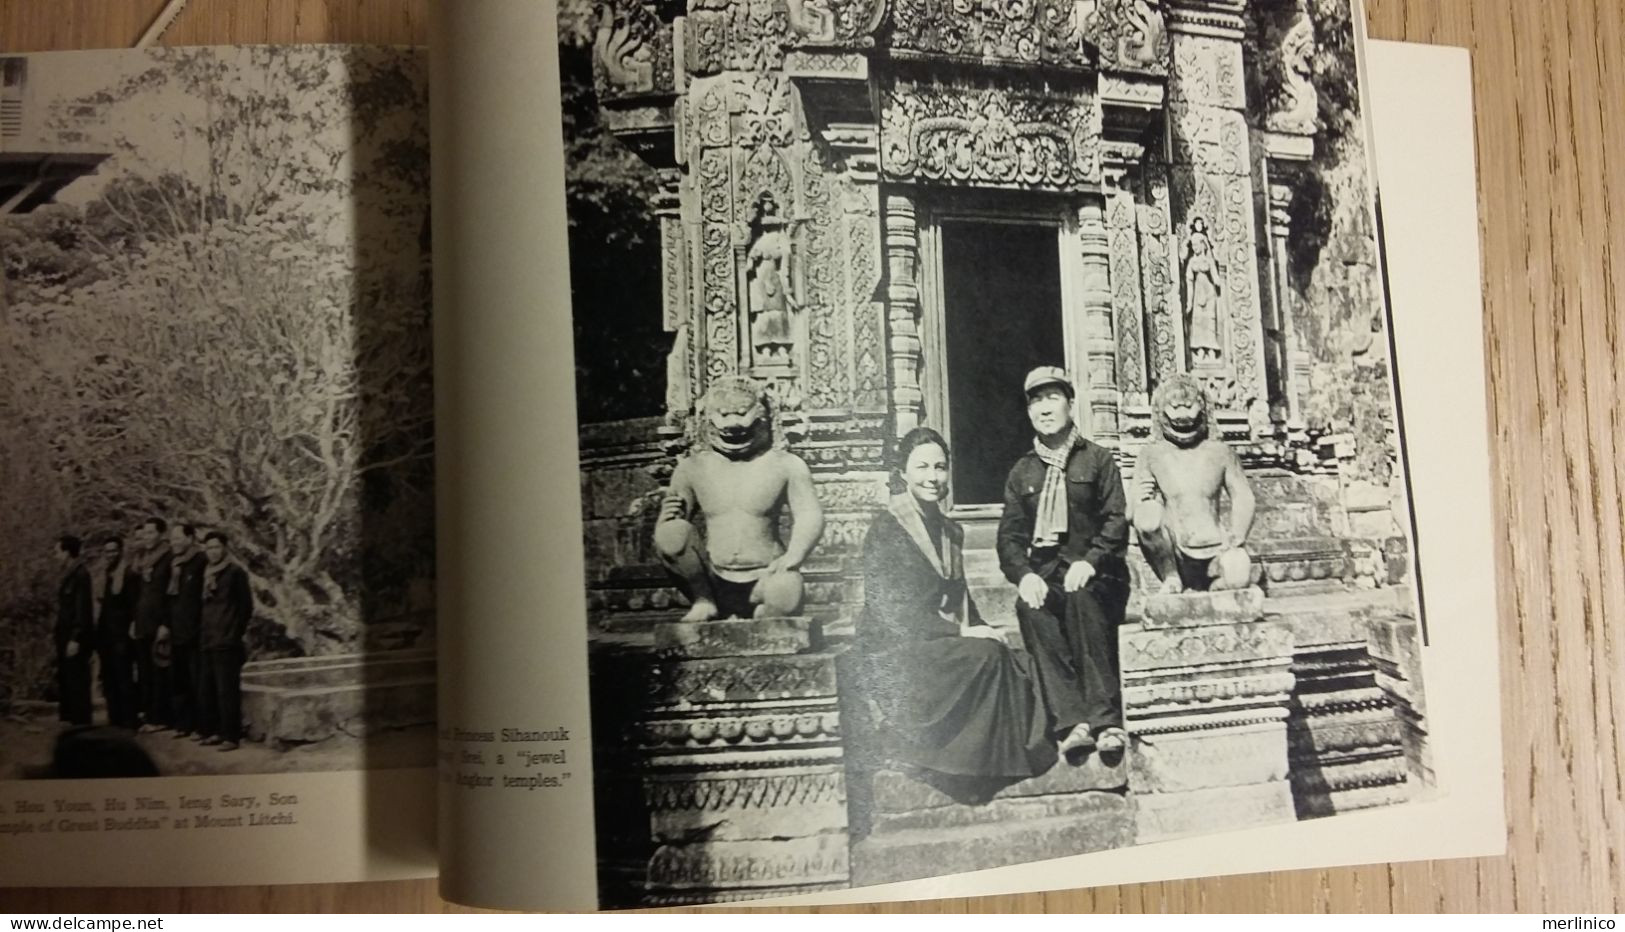 king Sihanouk returns to Cambodia